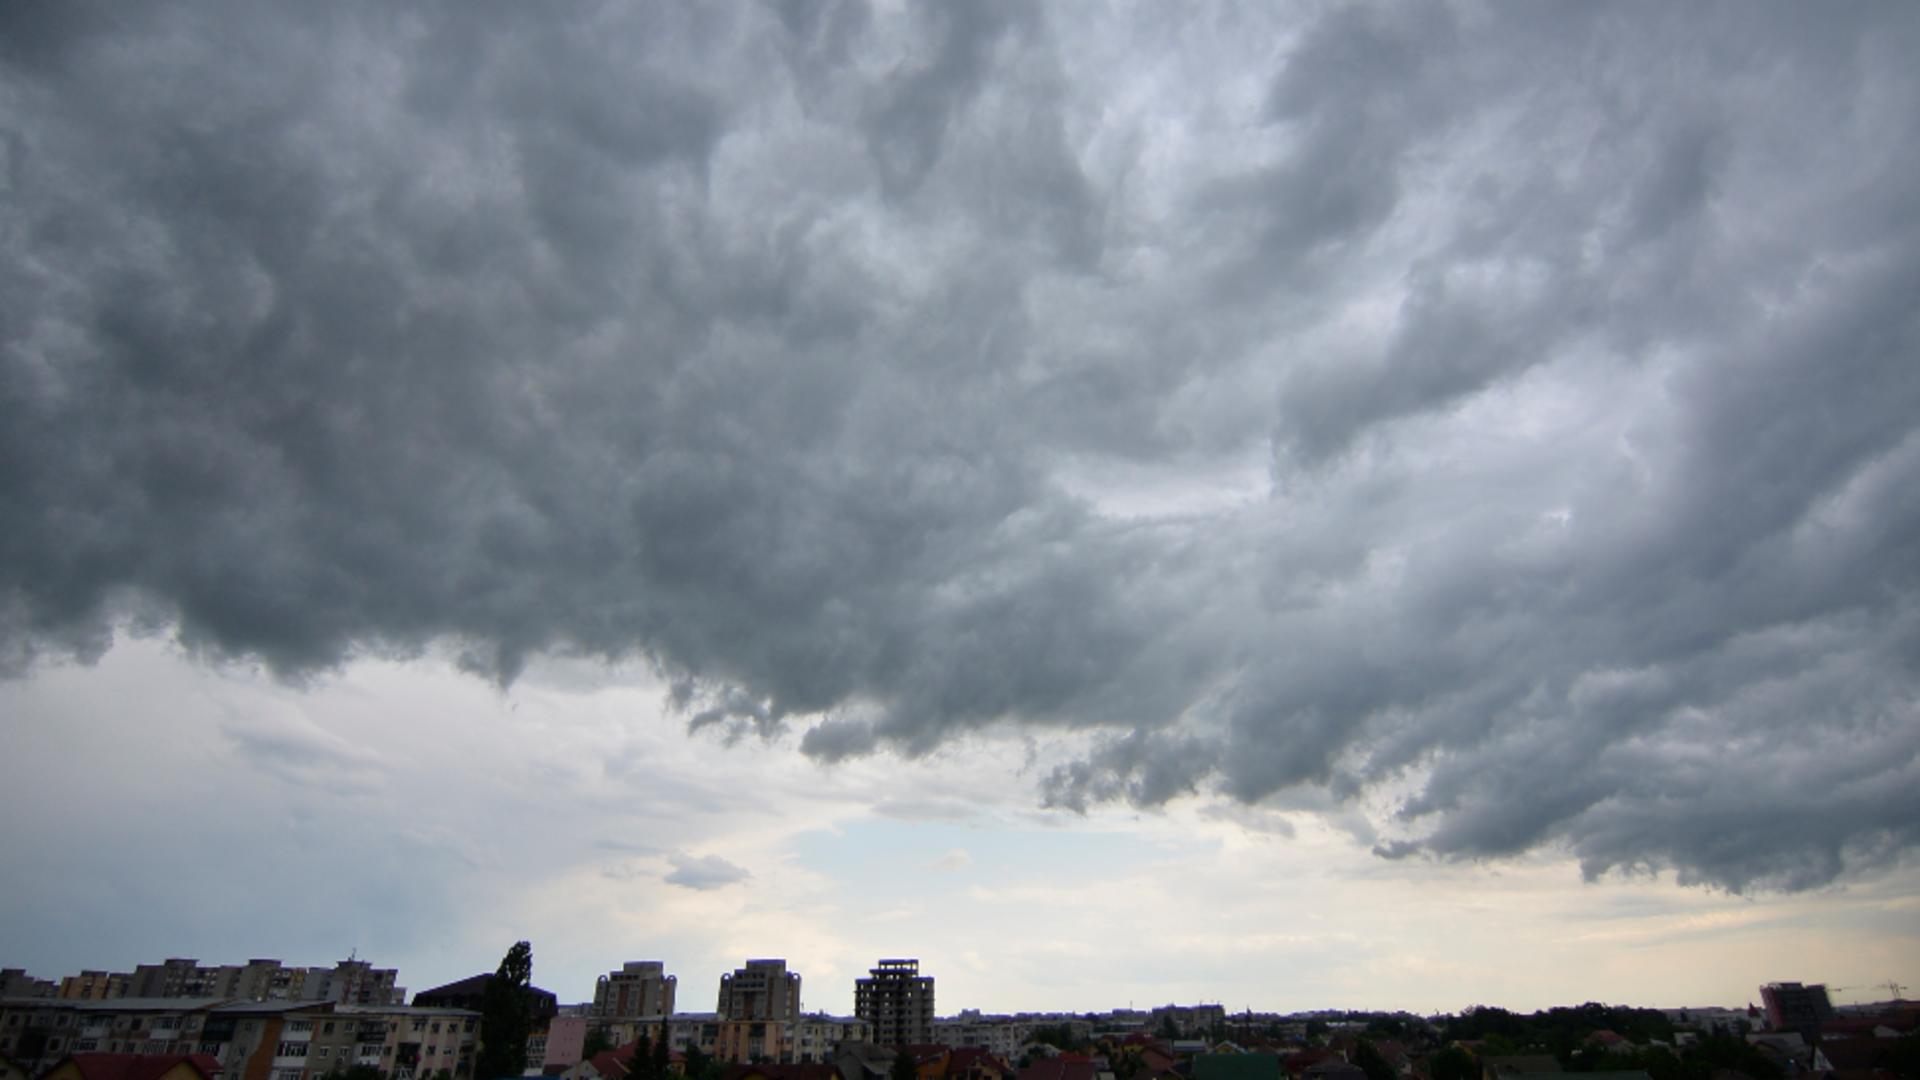 România, lovită de un ciclon mediteranean: vreme extrem de instabilă, furtuni zilnice / Foto: Inquam Photos